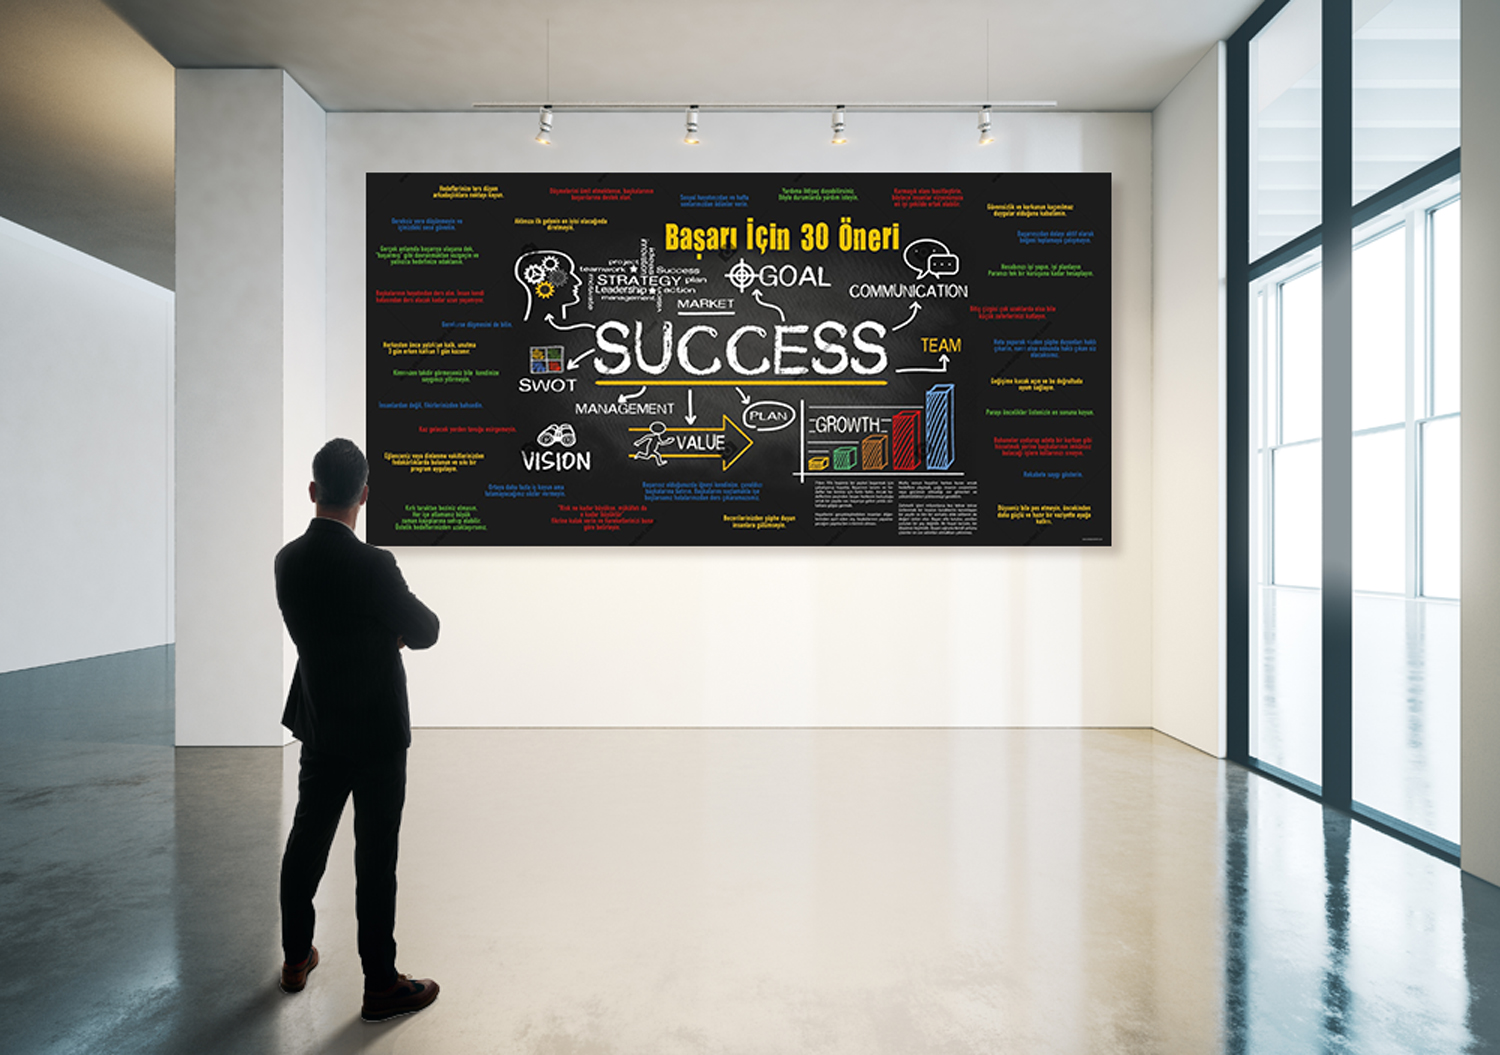 Başarı İçin 30 Öneri Okul Posteri